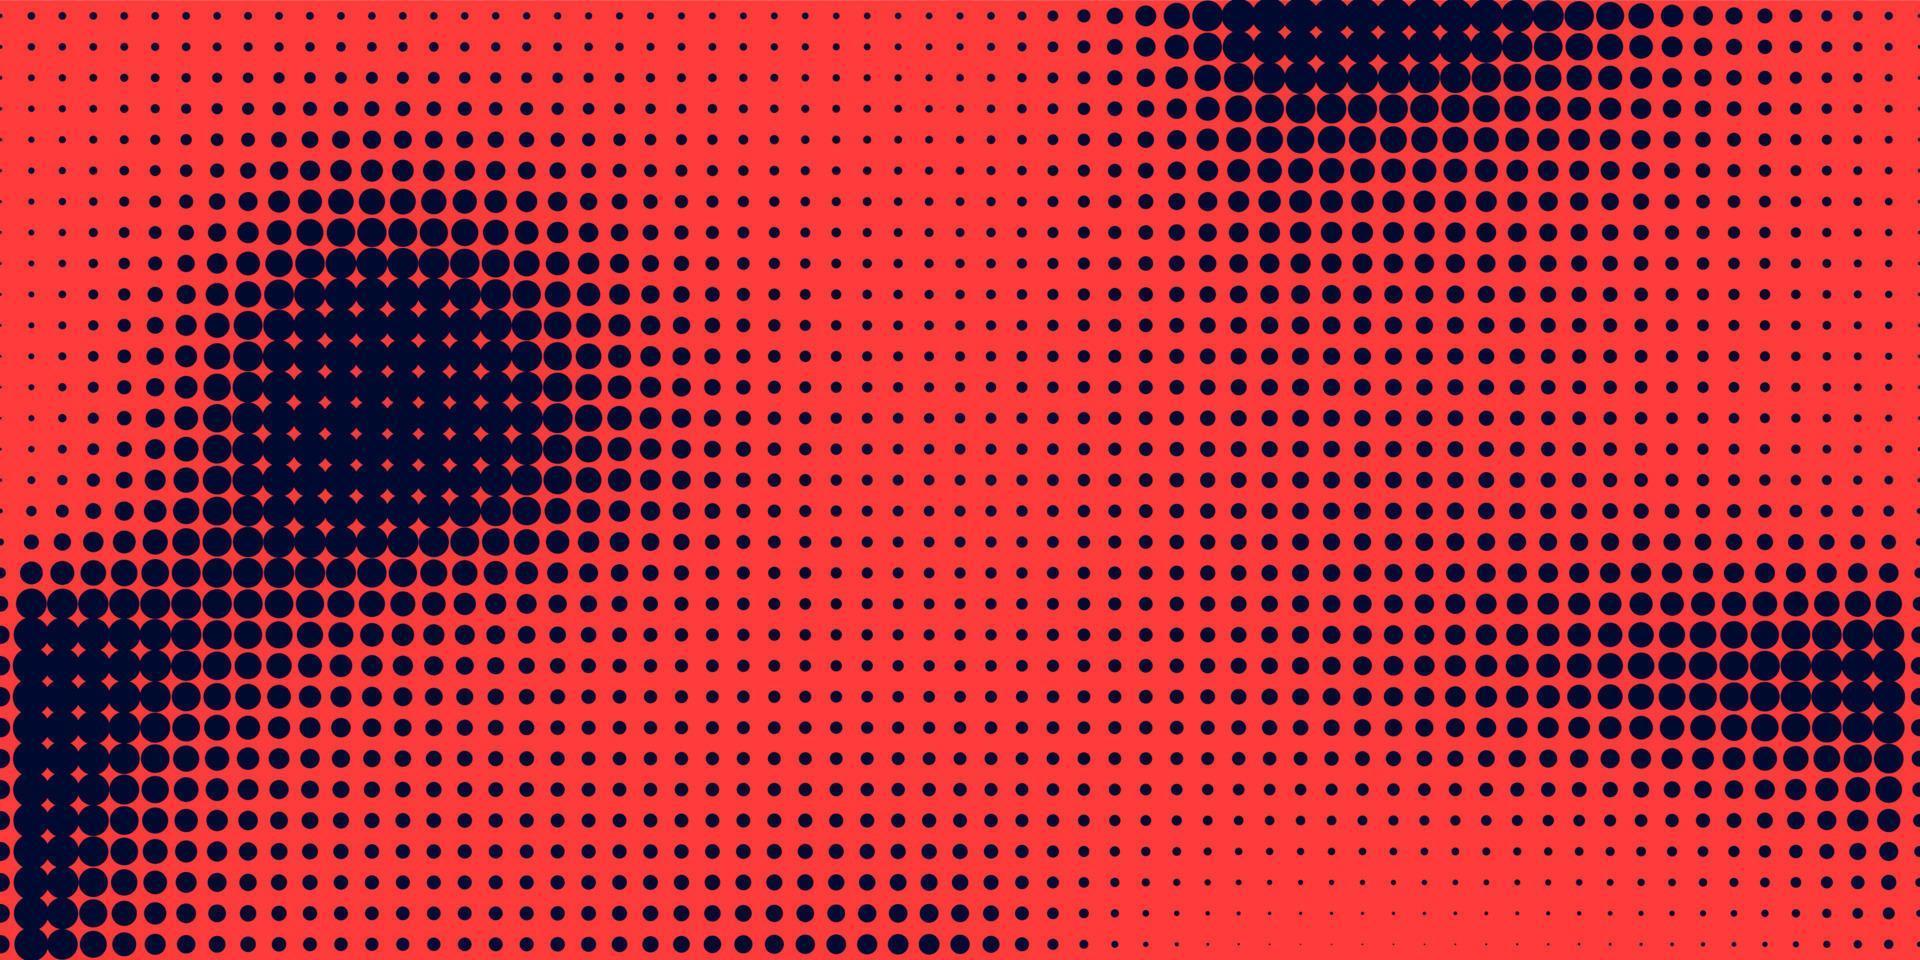 halftoon in abstracte stijl. geometrische retro banner vector textuur. moderne afdrukken. donkerblauwe en rode achtergrond. lichteffect